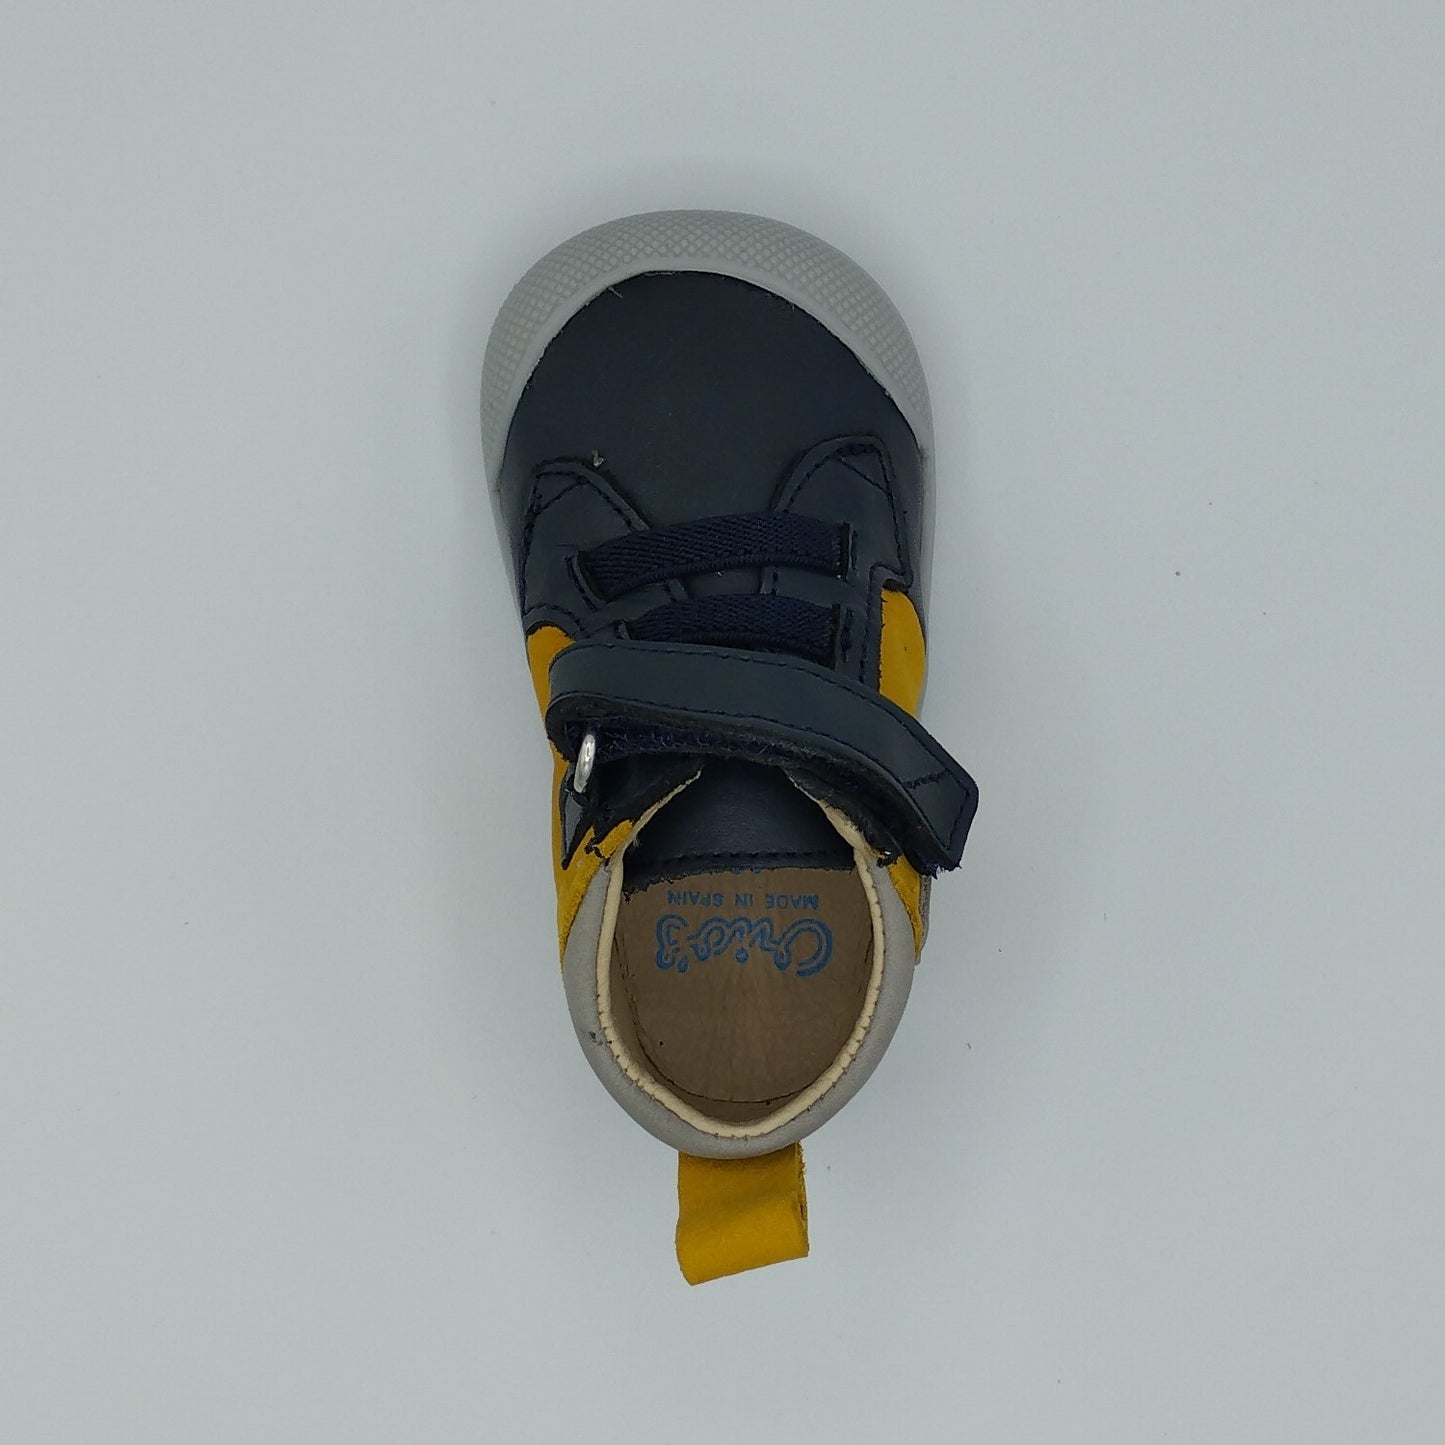 Zapato barefoot - Blanditos Gamo Navy Long Beach